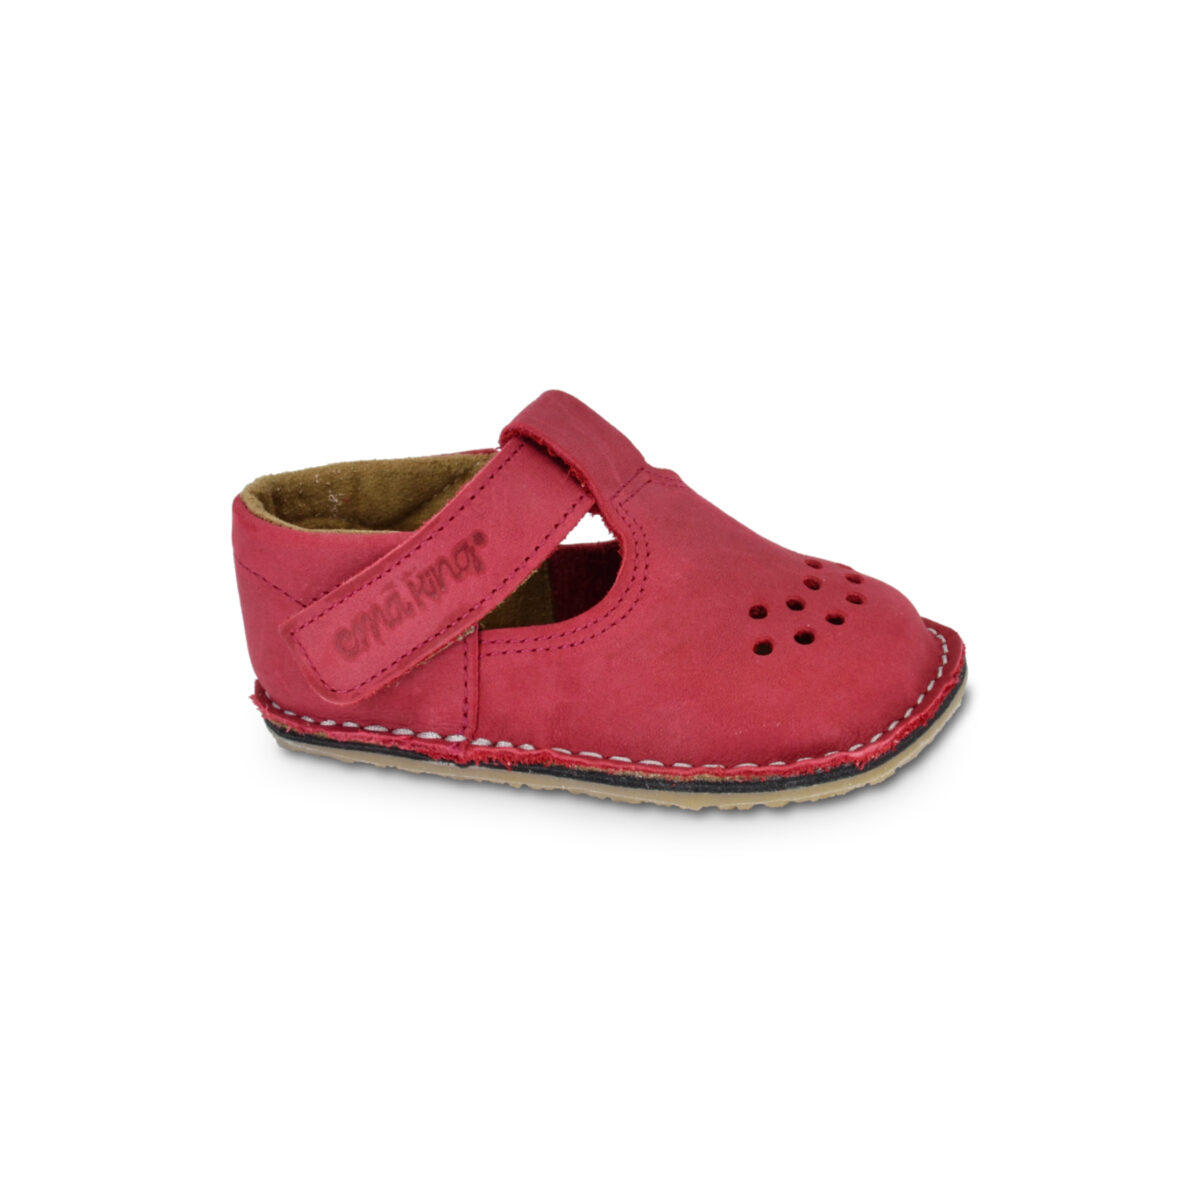 OmaKing nahast barefoot sandaalid Lusti- punane Laste barefoot jalatsid - HellyK - Kvaliteetsed lasteriided, villariided, barefoot jalatsid